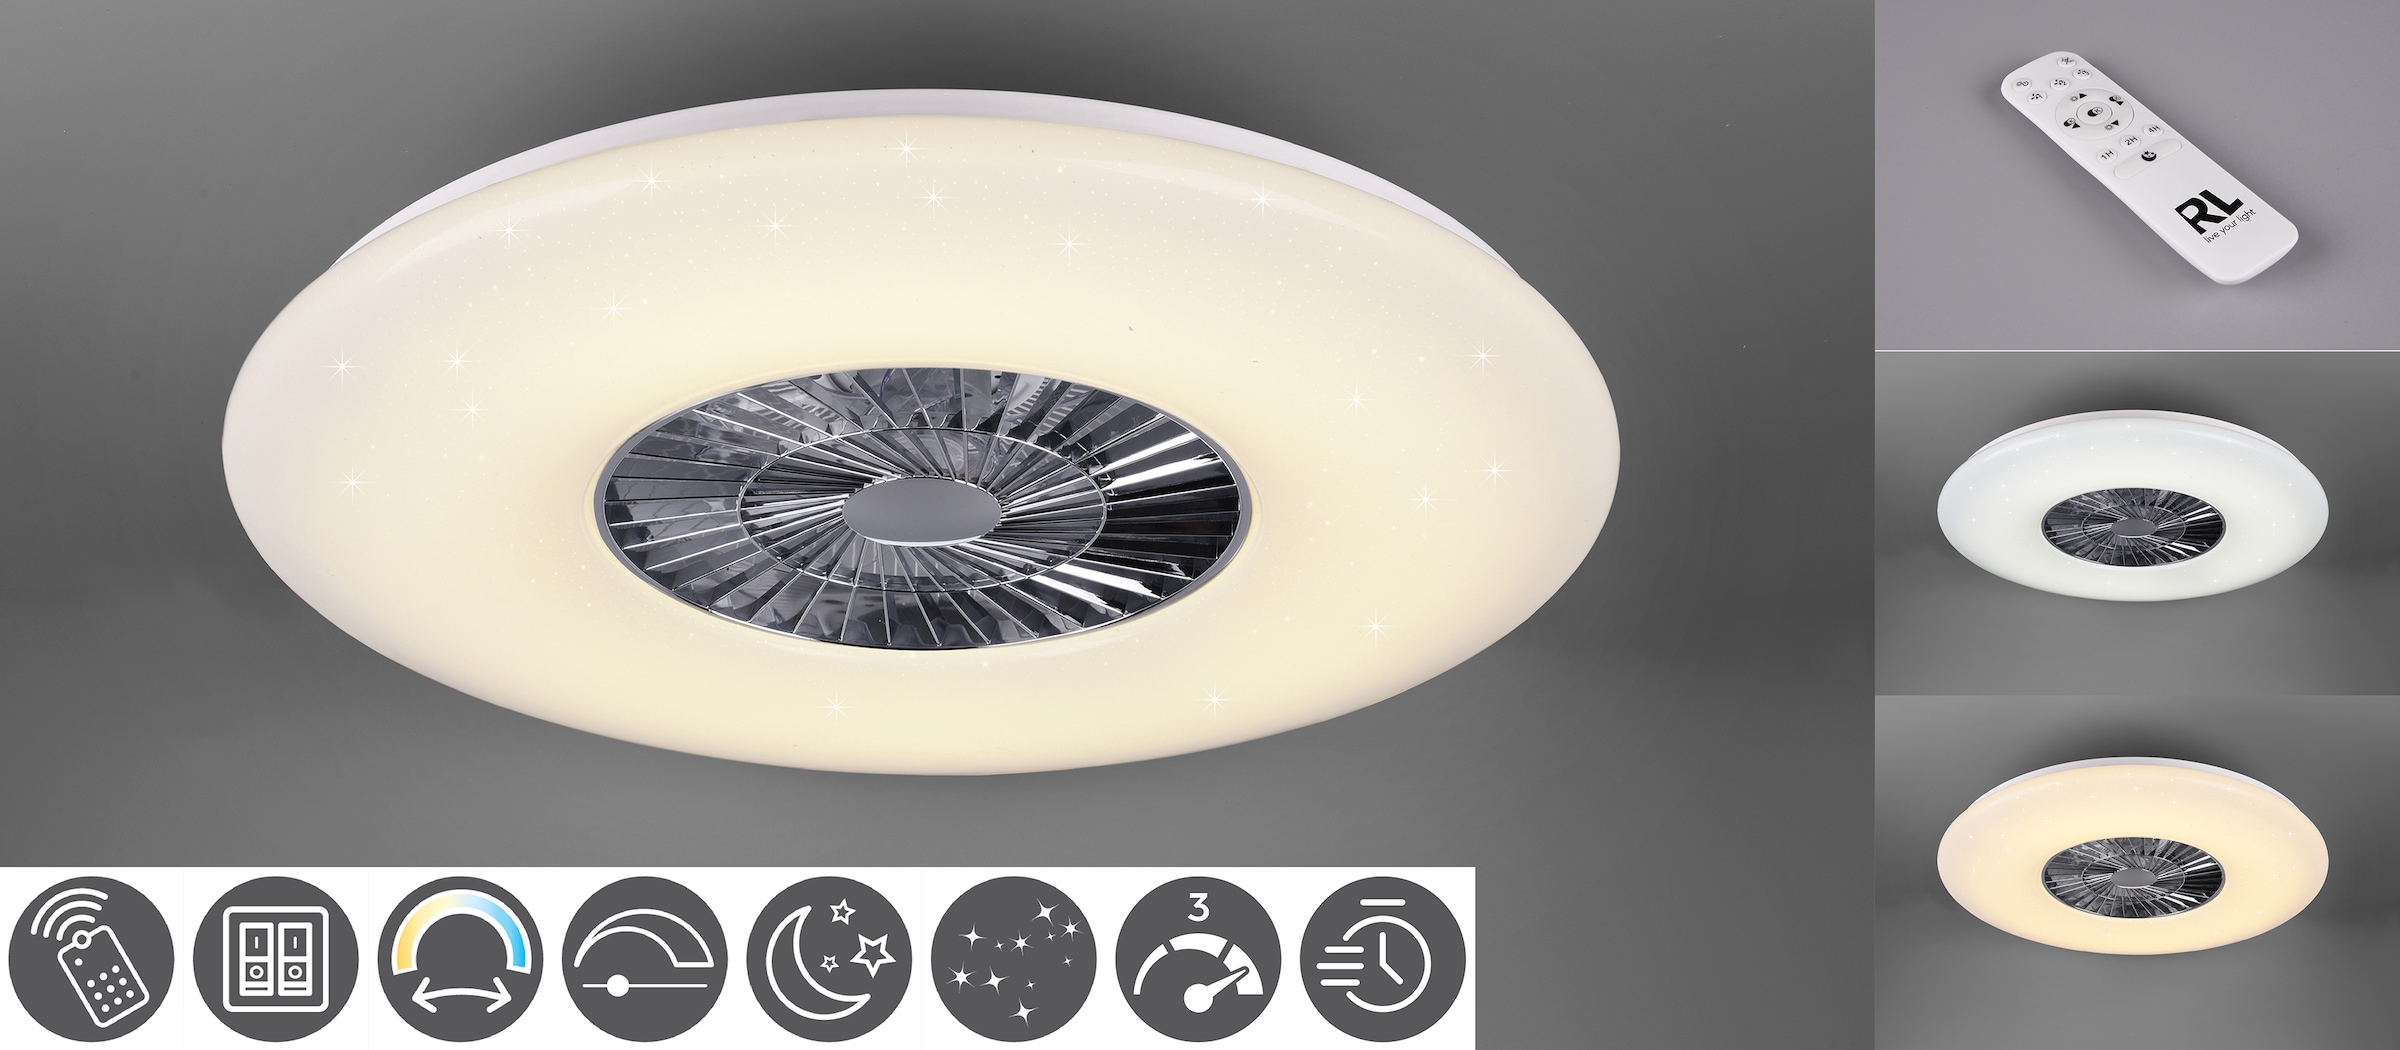 TRIO Leuchten LED Deckenleuchte »Visby«, mit Ventilator, Fernbedienung, integrierter Dimmer und Nachtlicht. Leuchte und Ventilator getrennt schaltbar